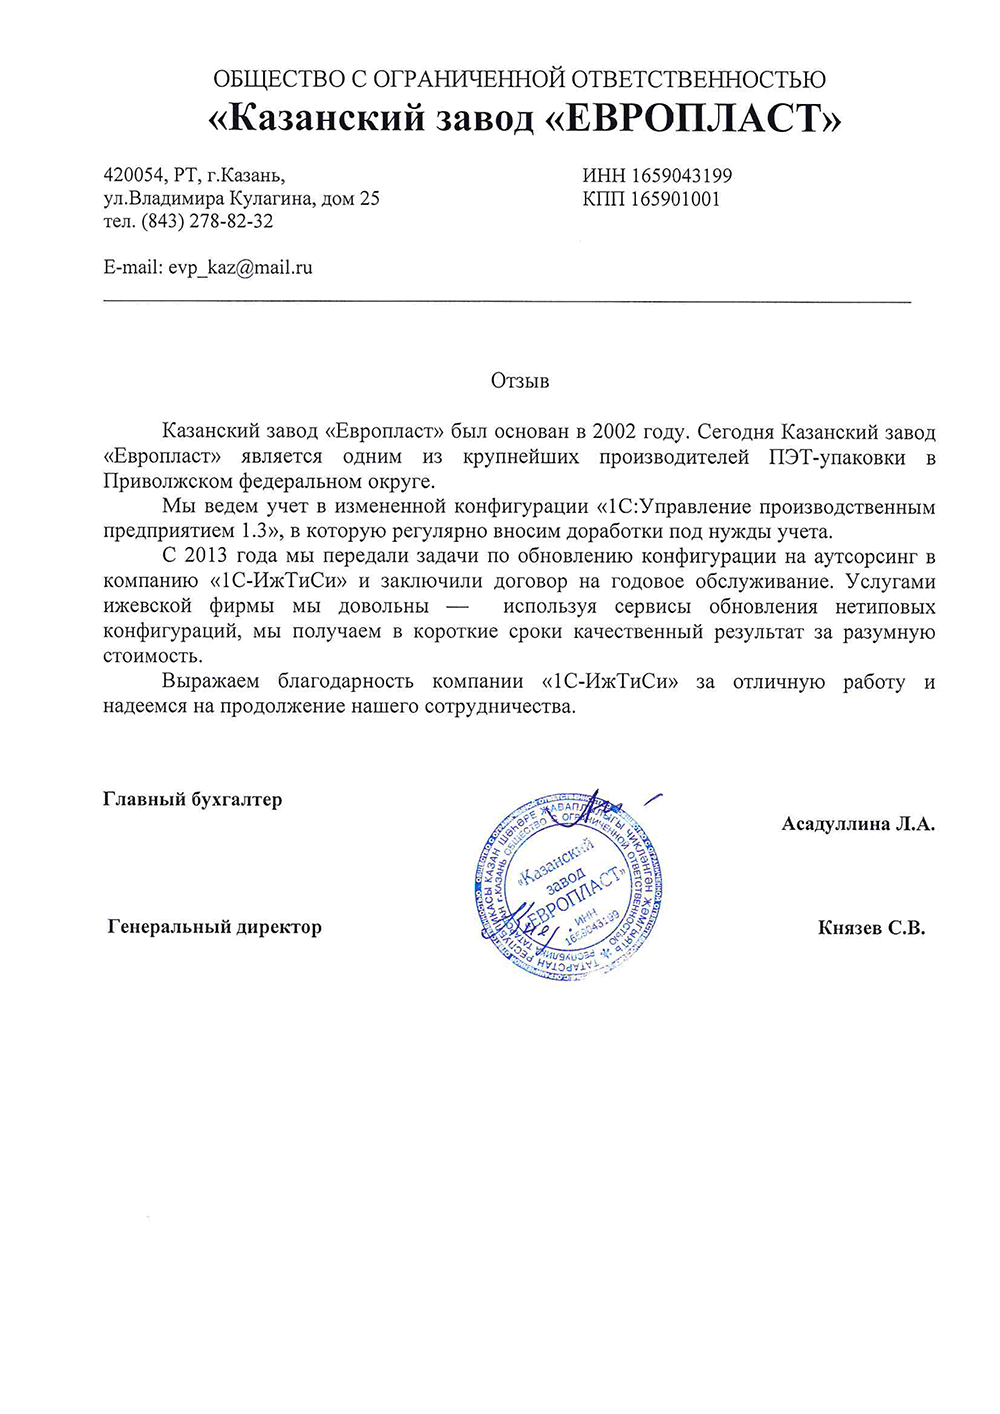 Отзыв ООО «Казанский завод «Европласт»